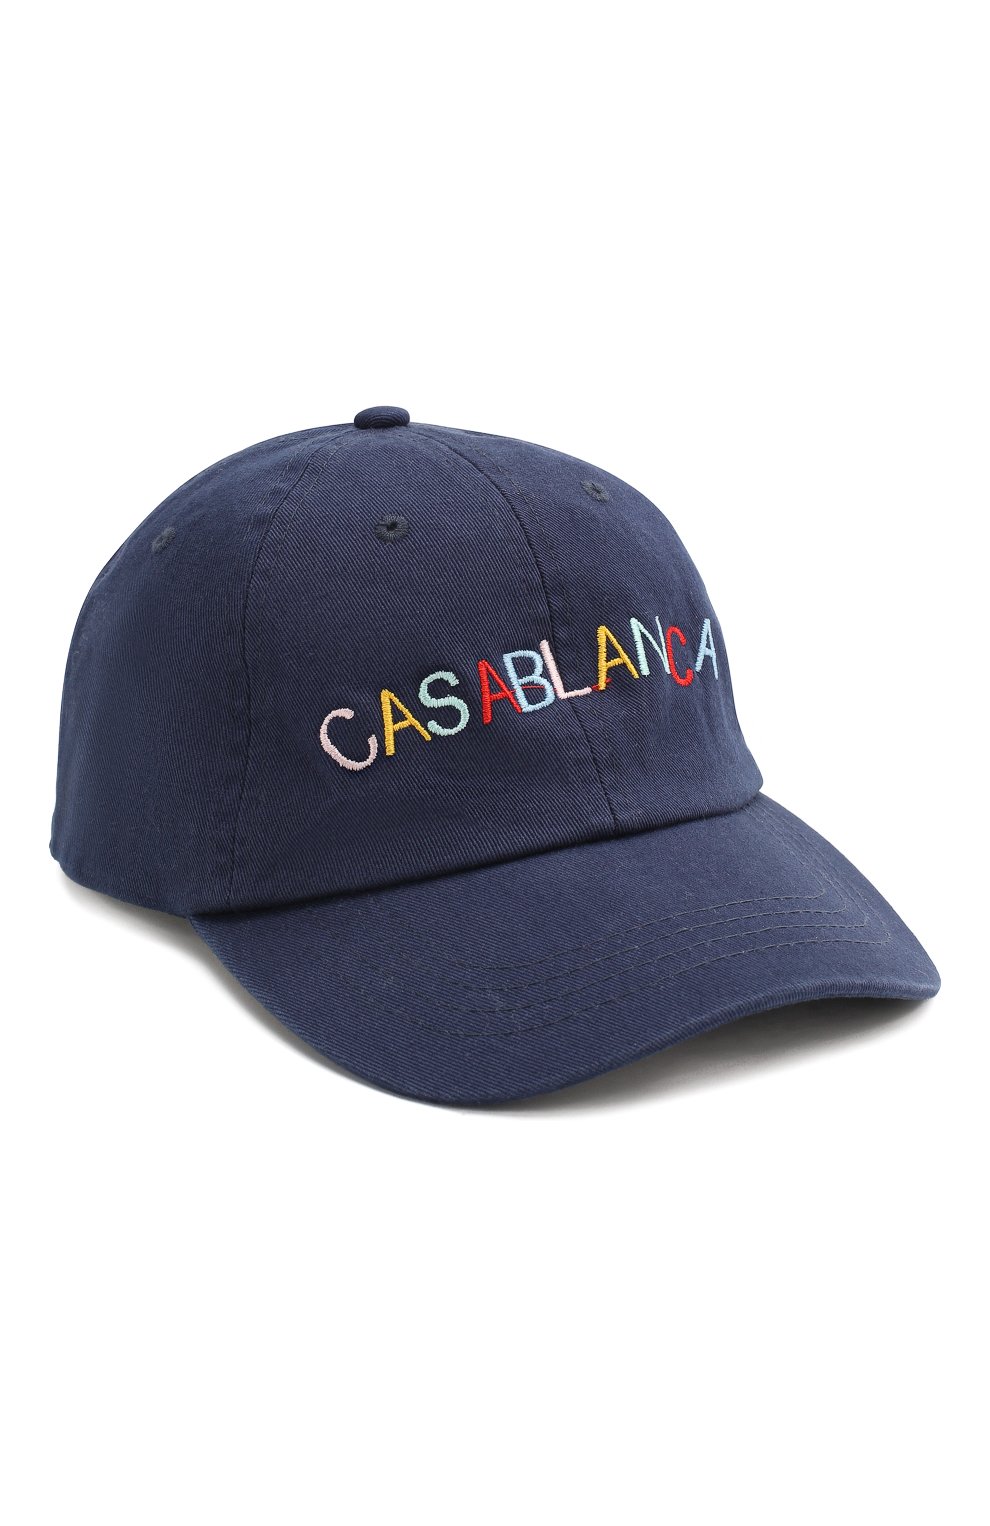 Мужской хлопковая бейсболка CASABLANCA темно-синего цвета, арт. AC20-HAT-002 CASA 0CEAN RES0RT CAP | Фото 1 (Материал: Текстиль, Хлопок)